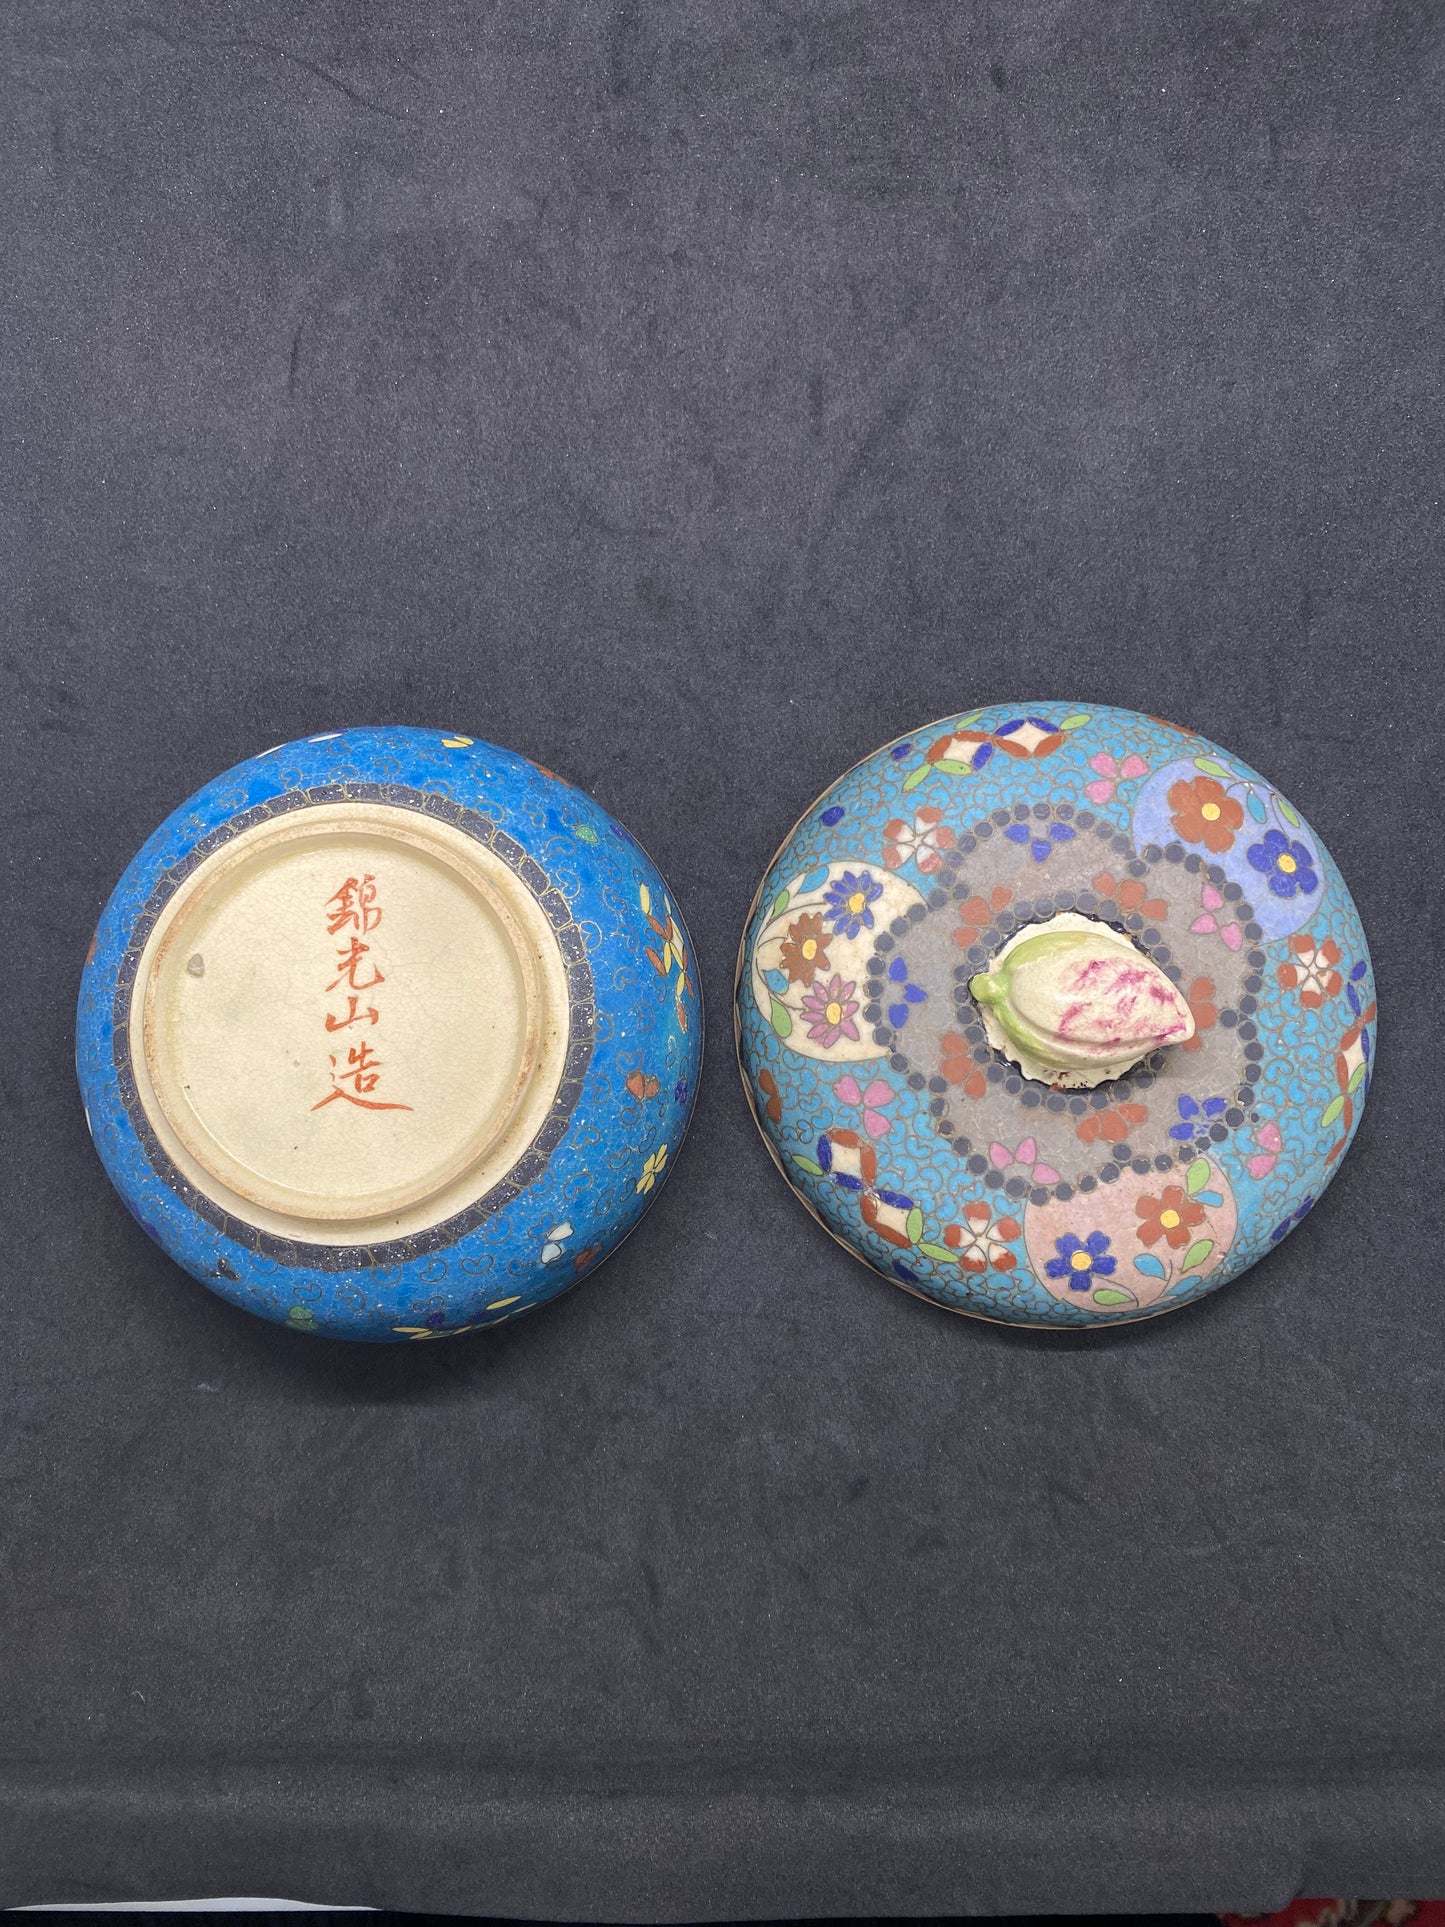 罕见的东大七宝景泰蓝和萨摩瓷带盖碗，带花蕾顶饰，明治时期